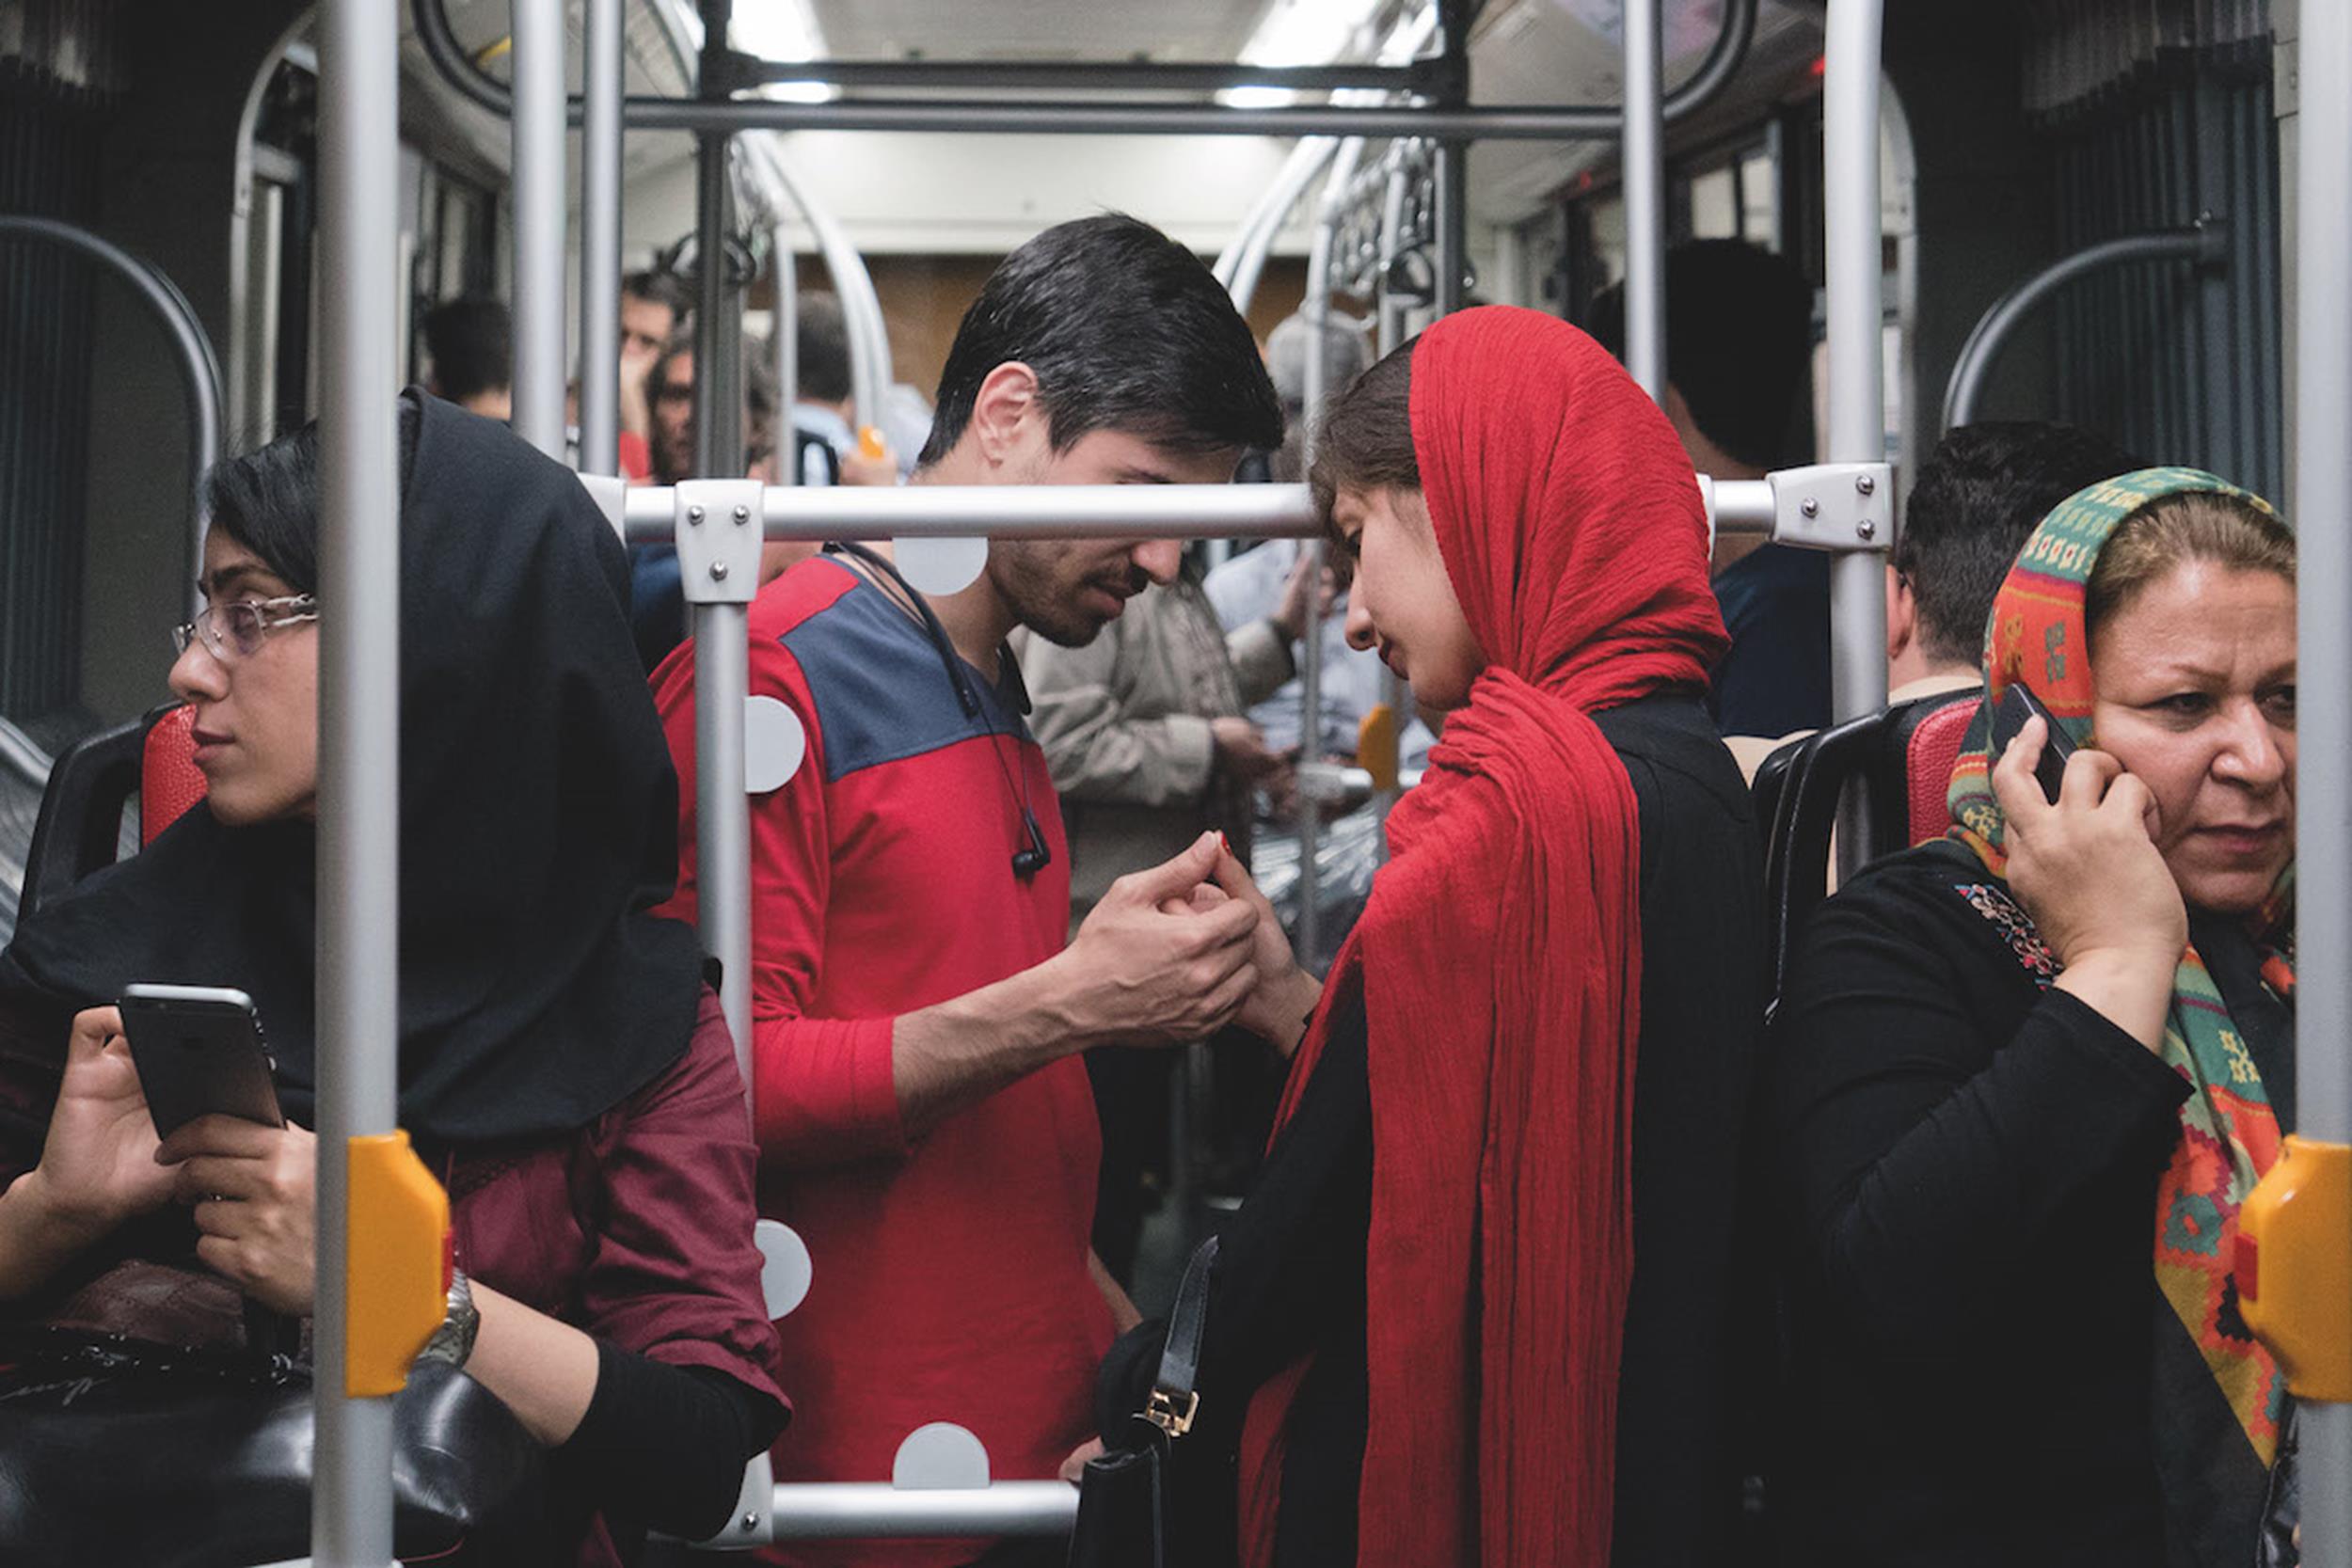 LUDZIE: Konstancja Nowina Konopka, Agencja Fotograficzna Edytor. Iran. Przestrzeń miejskiego autobusu w Teheranie jest podzielona z przyczyn kulturowo-religijnych. Osobno podróżują kobiety, osobno mężczyźni. Miłość nie zna tych granic. 1 maja 2017